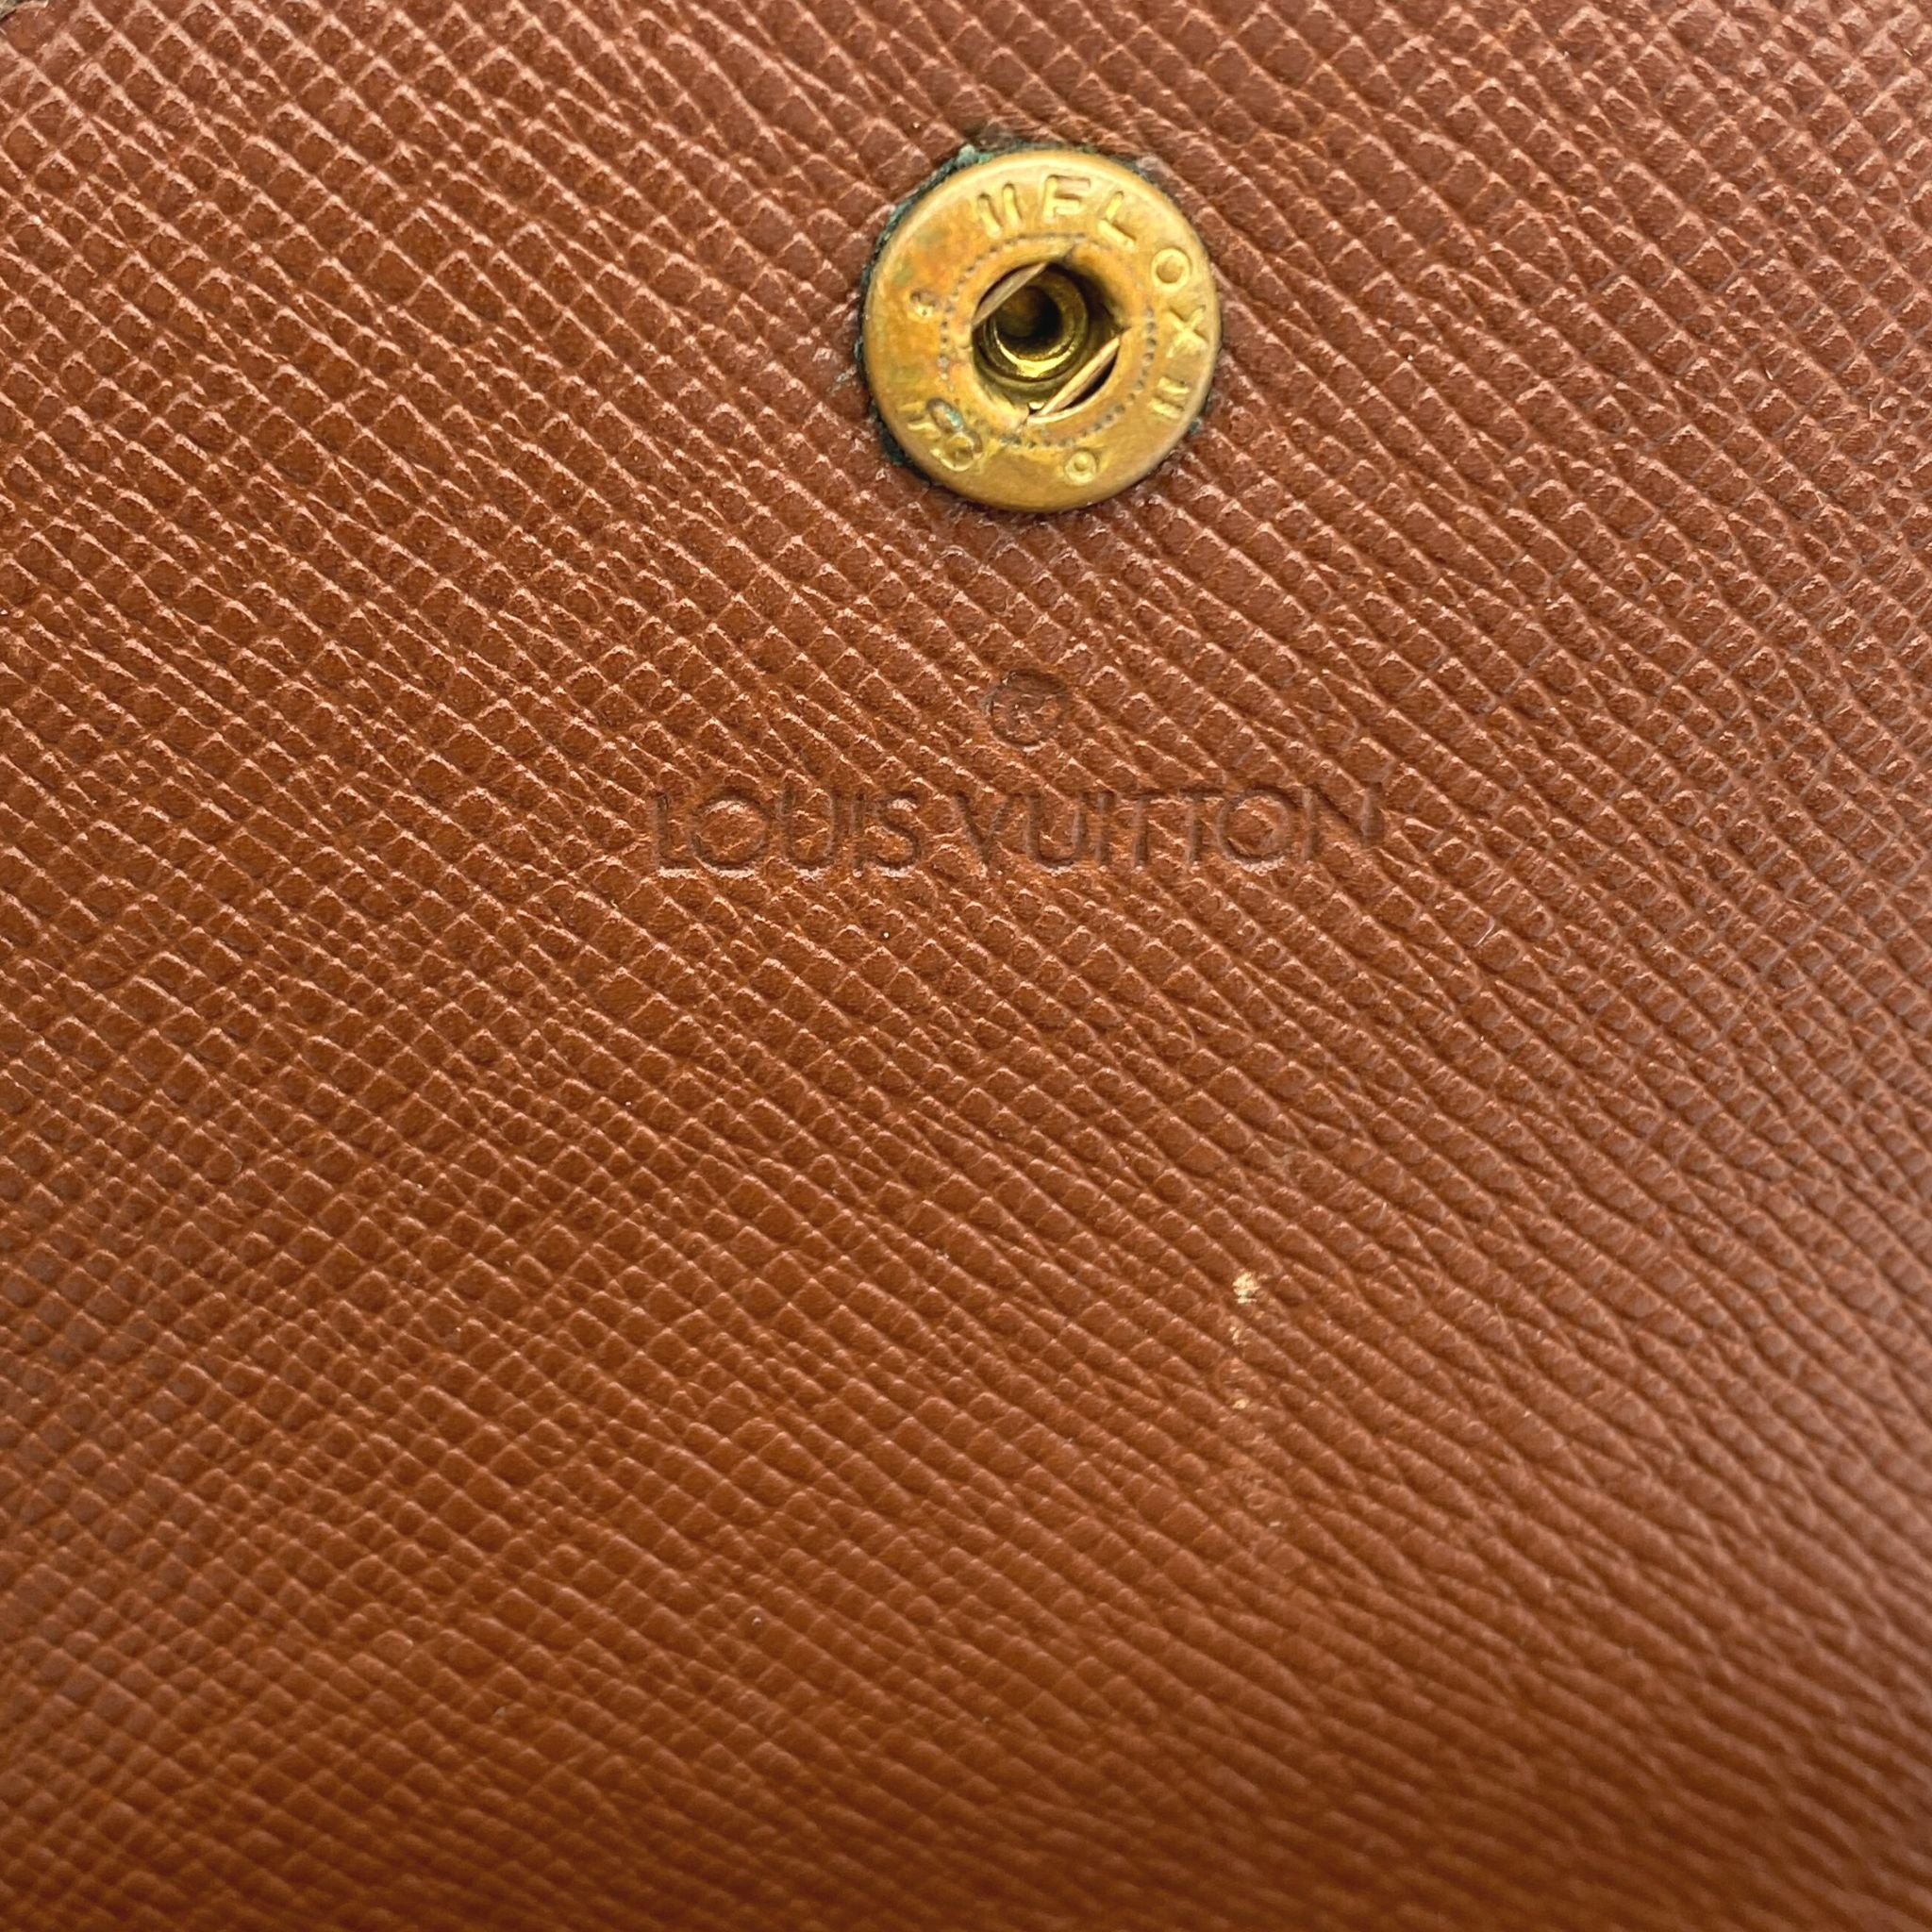 Authentic LV Vintage Coin purse